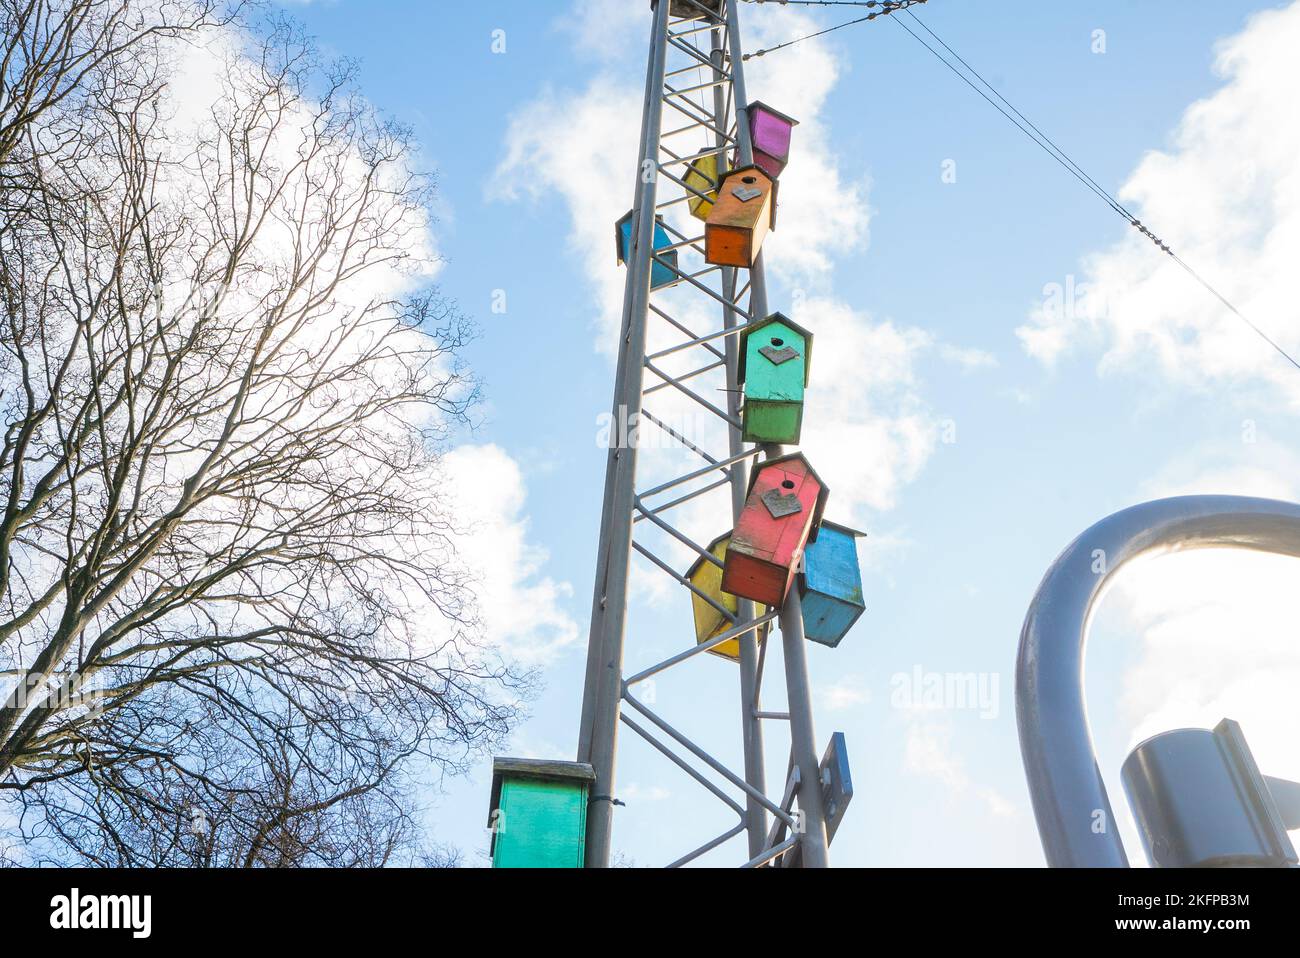 Boîtes à oiseaux décorées et colorées à Copenhague, Danemark. Nichoirs multicolores dans les rues de la ville de Copenhague. Rewilding urbain / re-wilding Banque D'Images